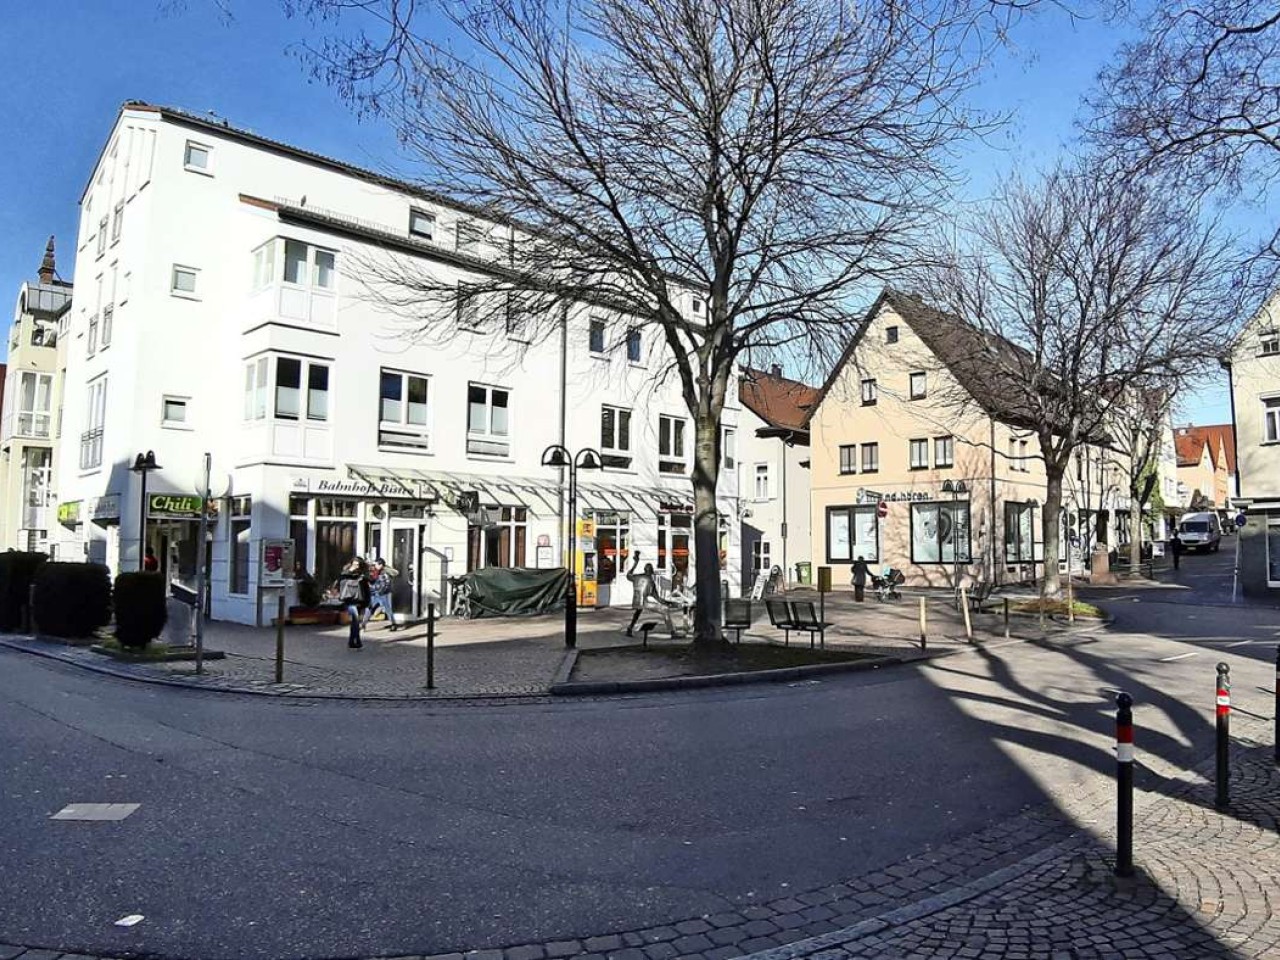 Untertürkheim soll attraktiver werden: Neuer Festplatz im Ortskern geplant